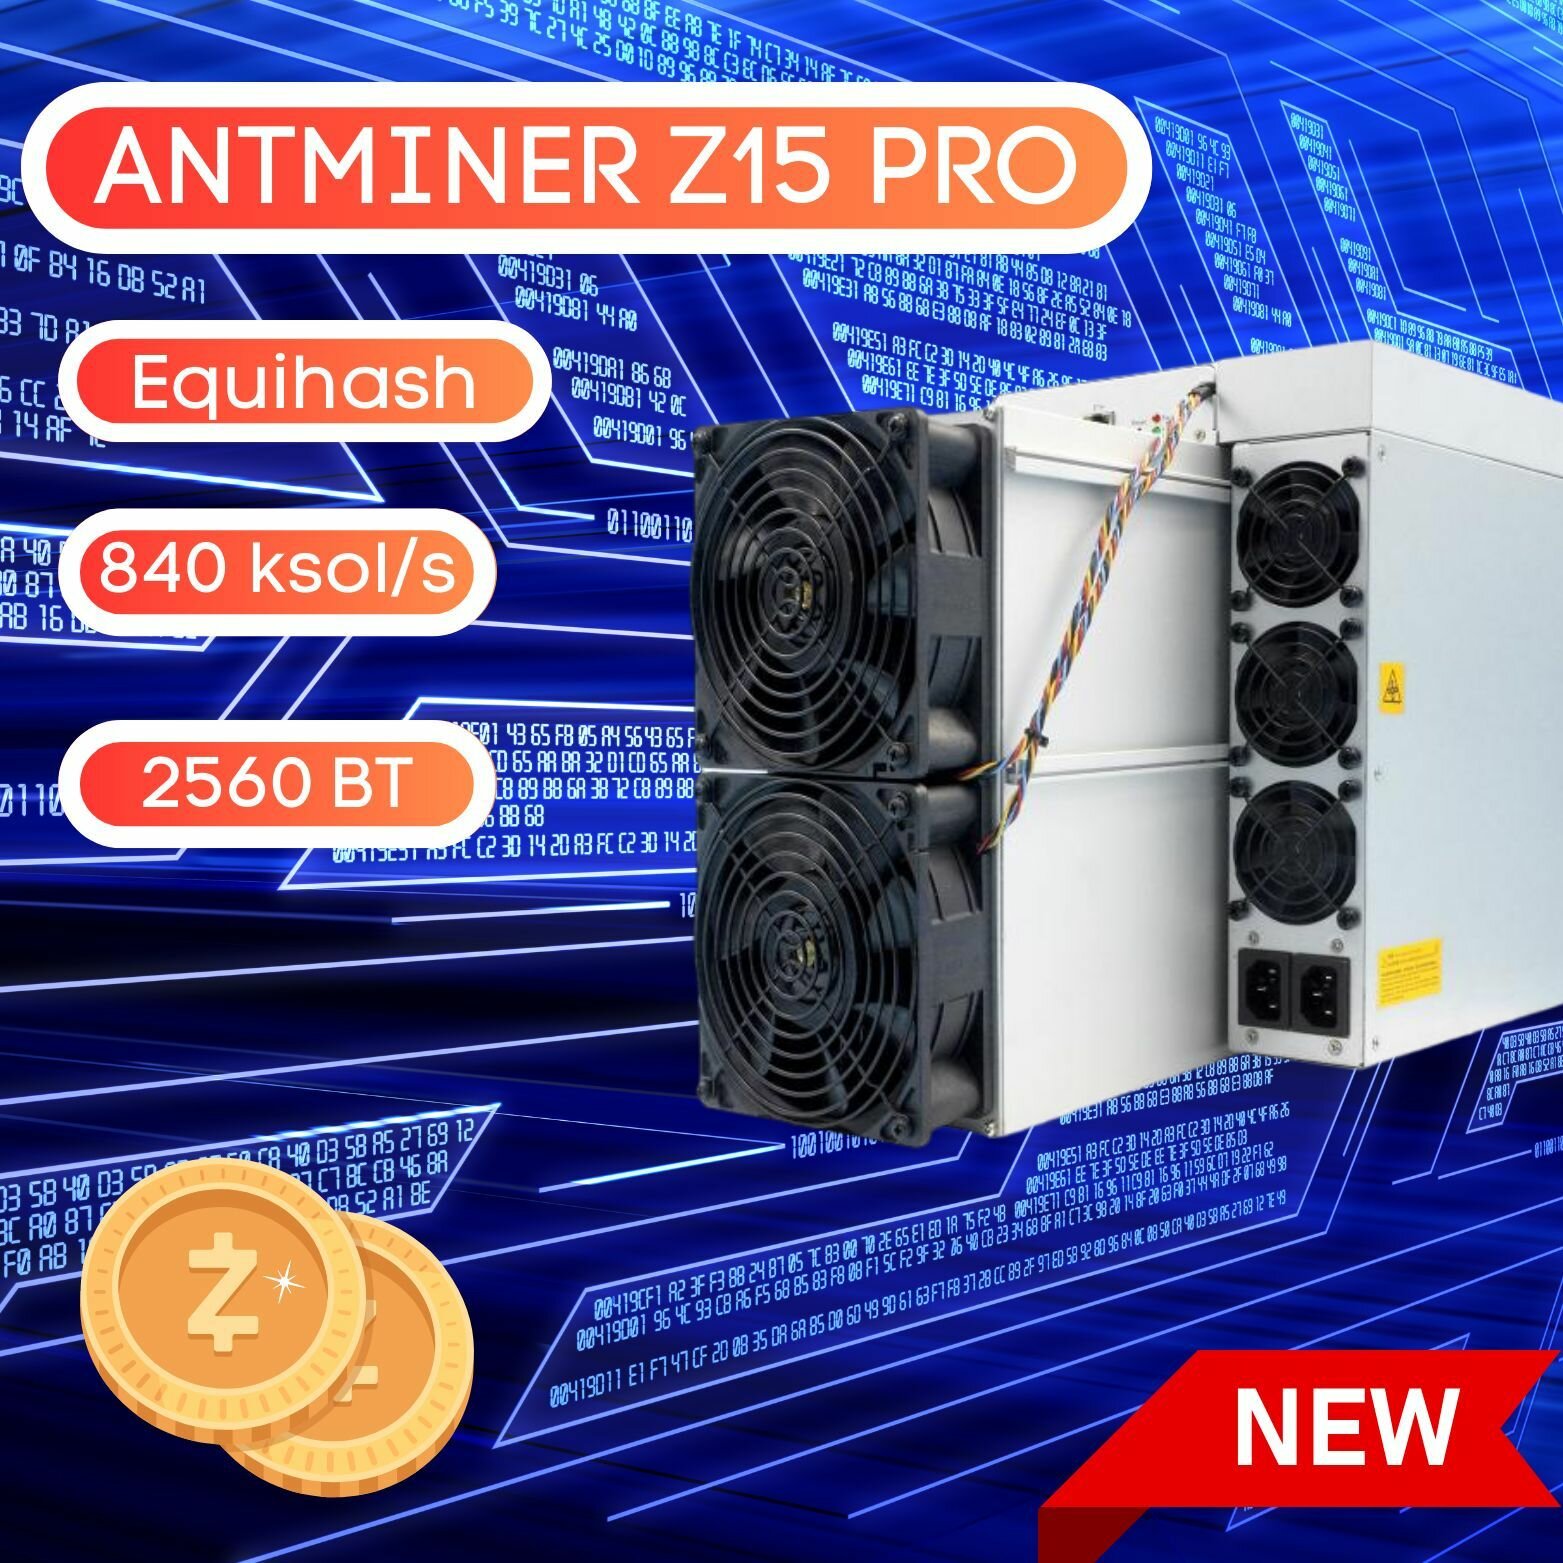 Асик майнер Bitmain Antminer Z15 PRO 840 K/Sol